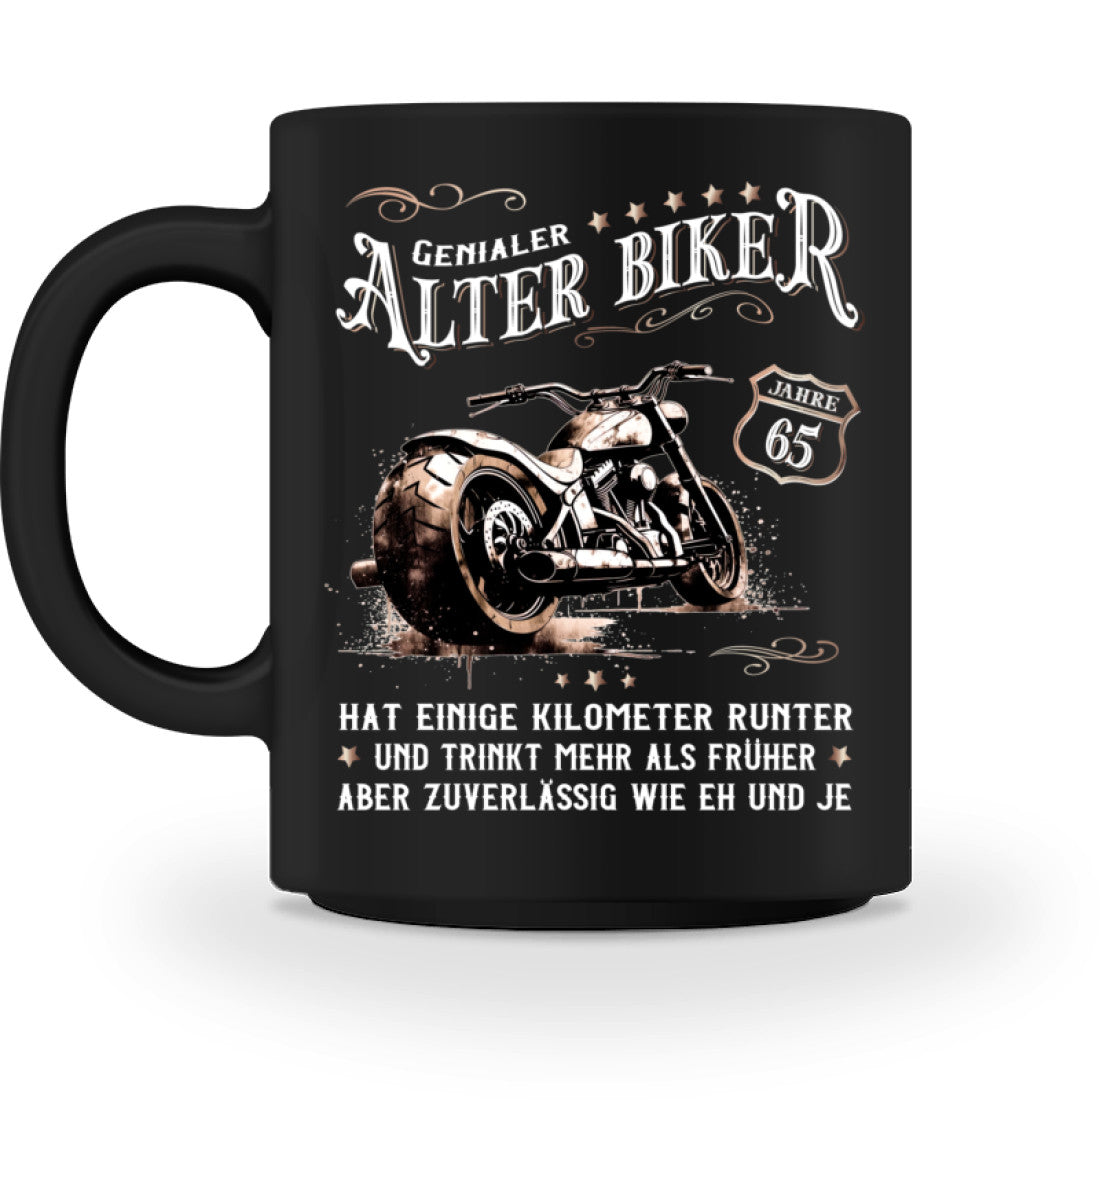 Eine Biker Geburtstags-Tasse für Motorradfahrer, von Wingbikers, mit dem beidseitigen Aufdruck, Alter Biker - 65 Jahre - Einige Kilometer runter, trinkt mehr - aber zuverlässig wie eh und je, in schwarz.